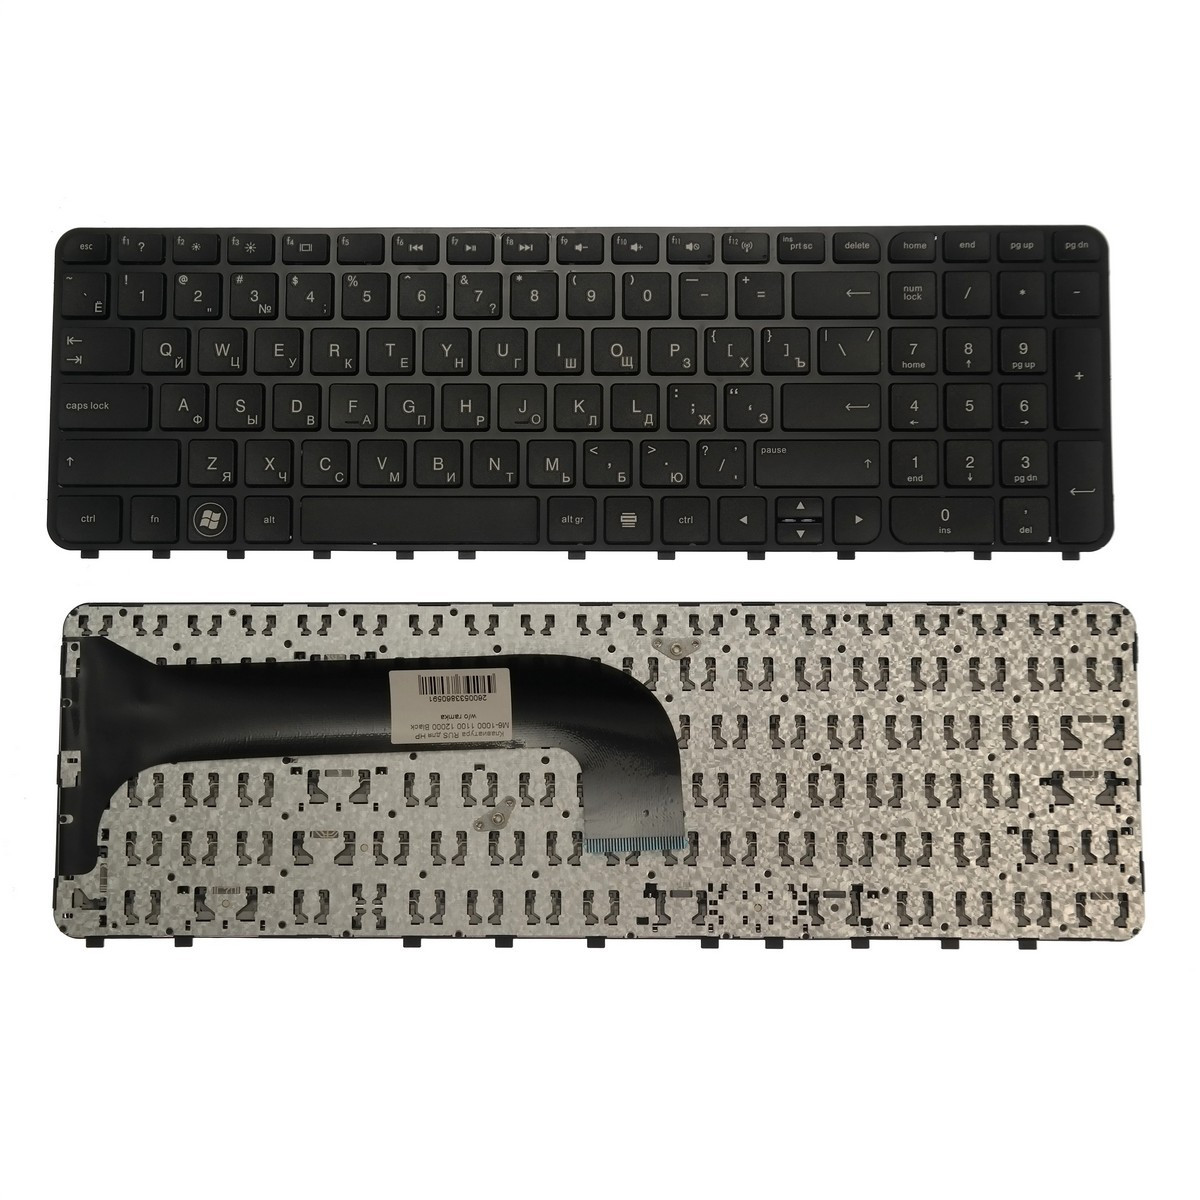 Клавиатура для ноутбука HP M6-1000 1100 12000 черная w/o ramka и других моделей ноутбуков